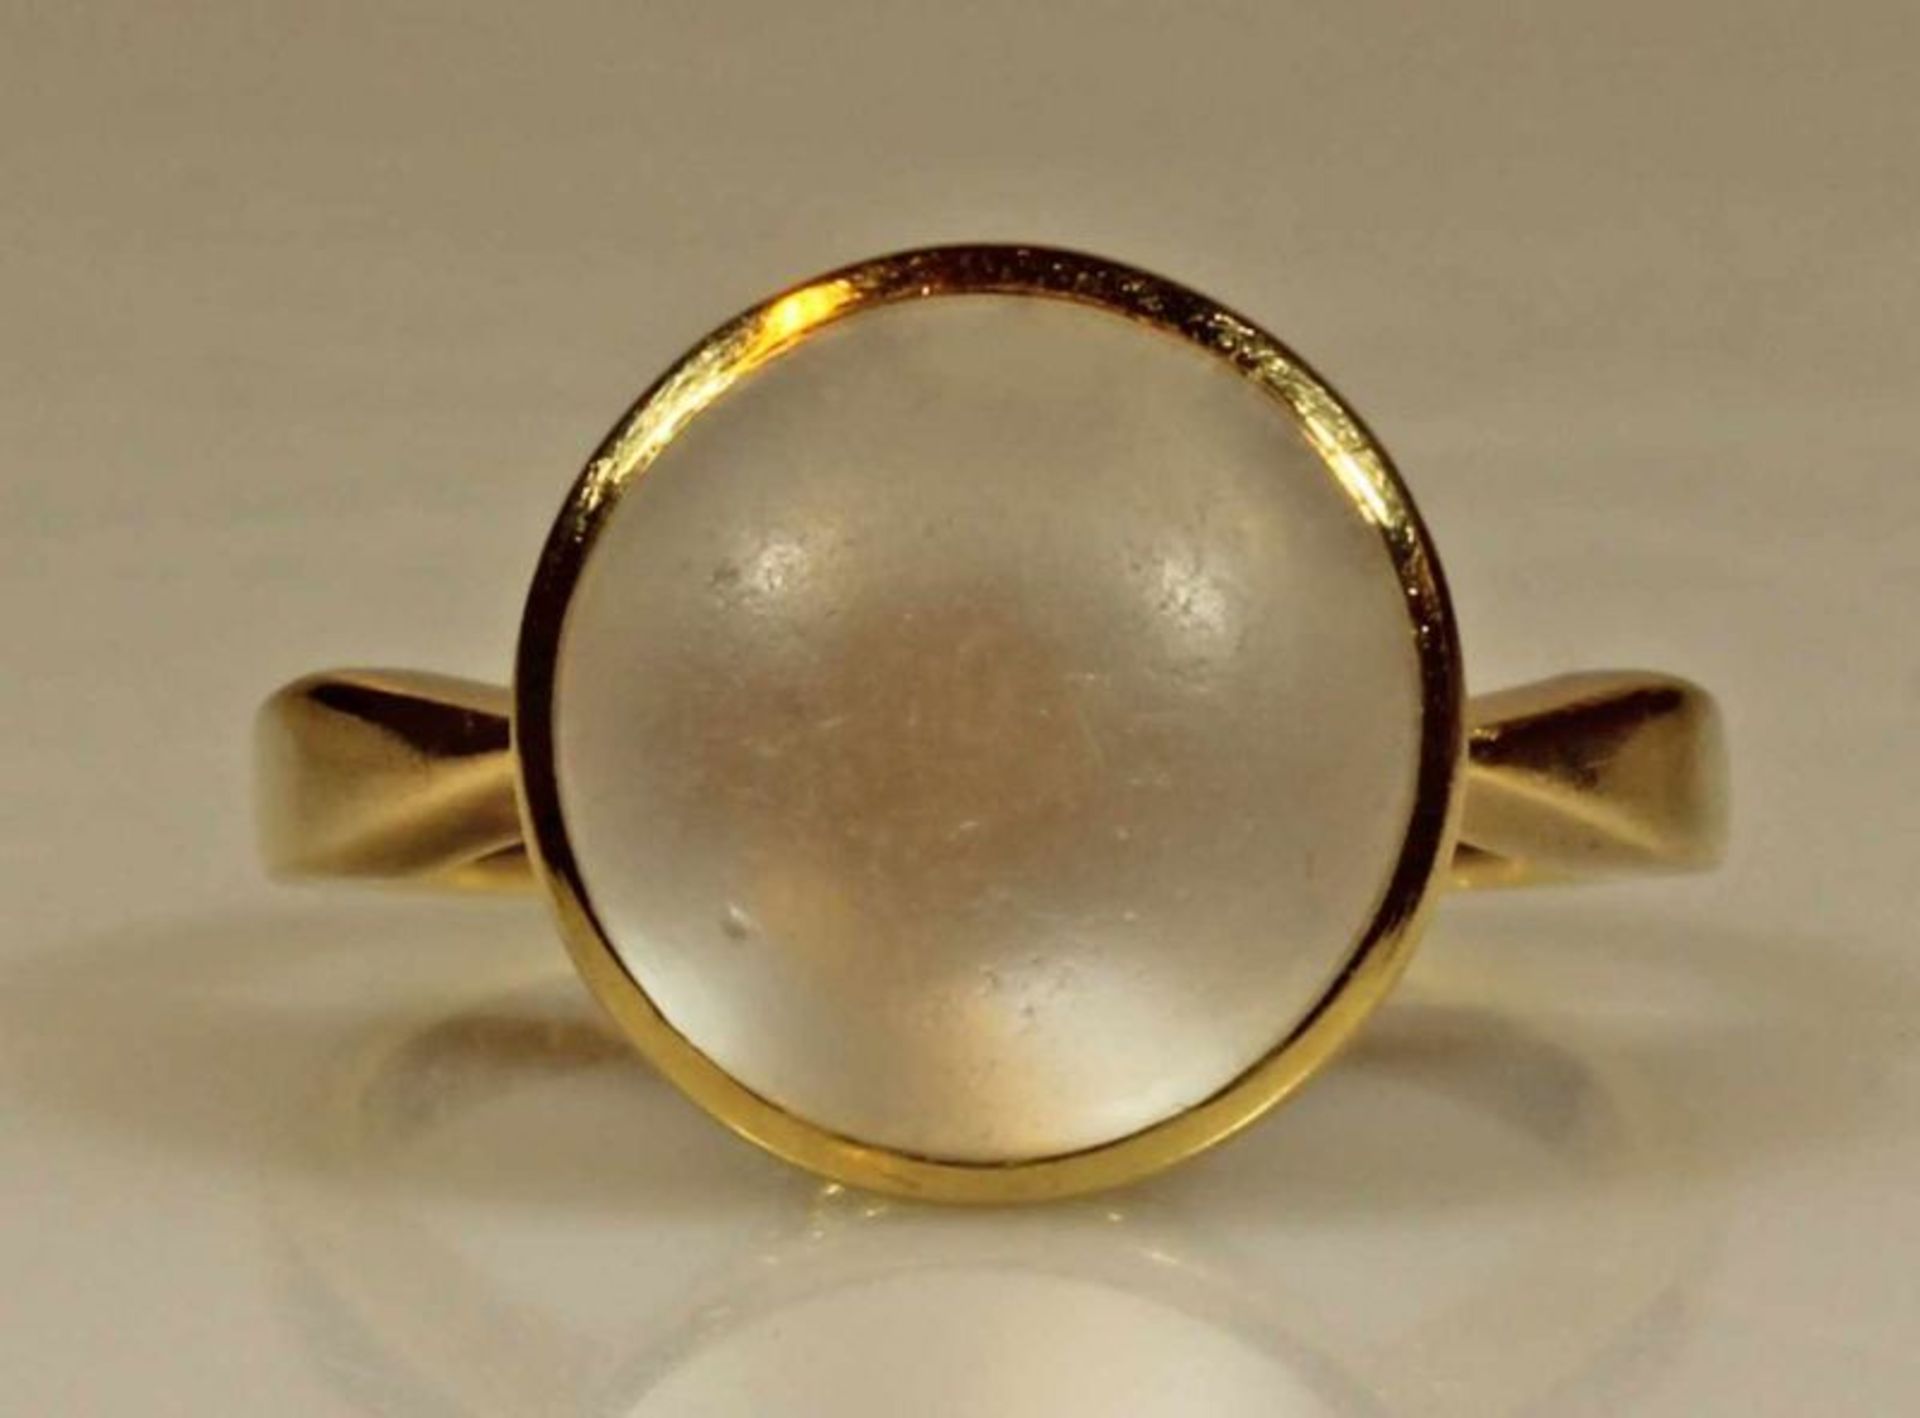 Ring, GG 750, 1 runder Mondstein-Cabochon ø ca. 12 mm, 6.2 g, RM 16.5 20.00 % buyer's premium on the